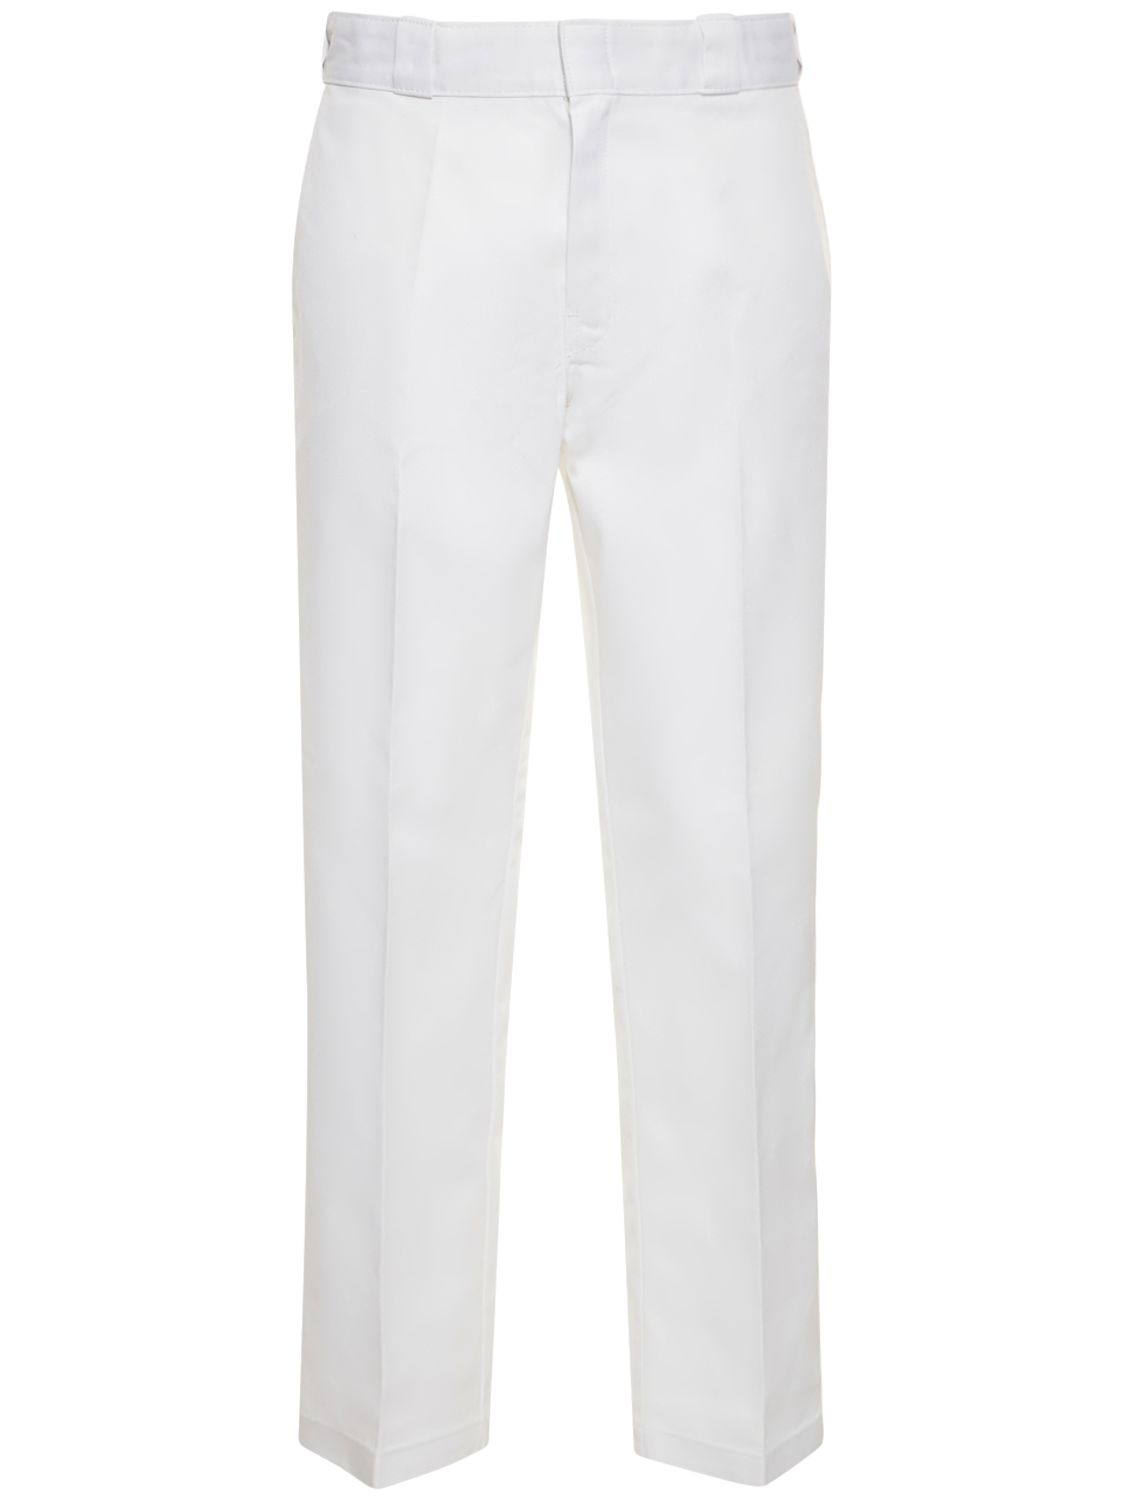 Shop Dickies 874 Work Pants In White